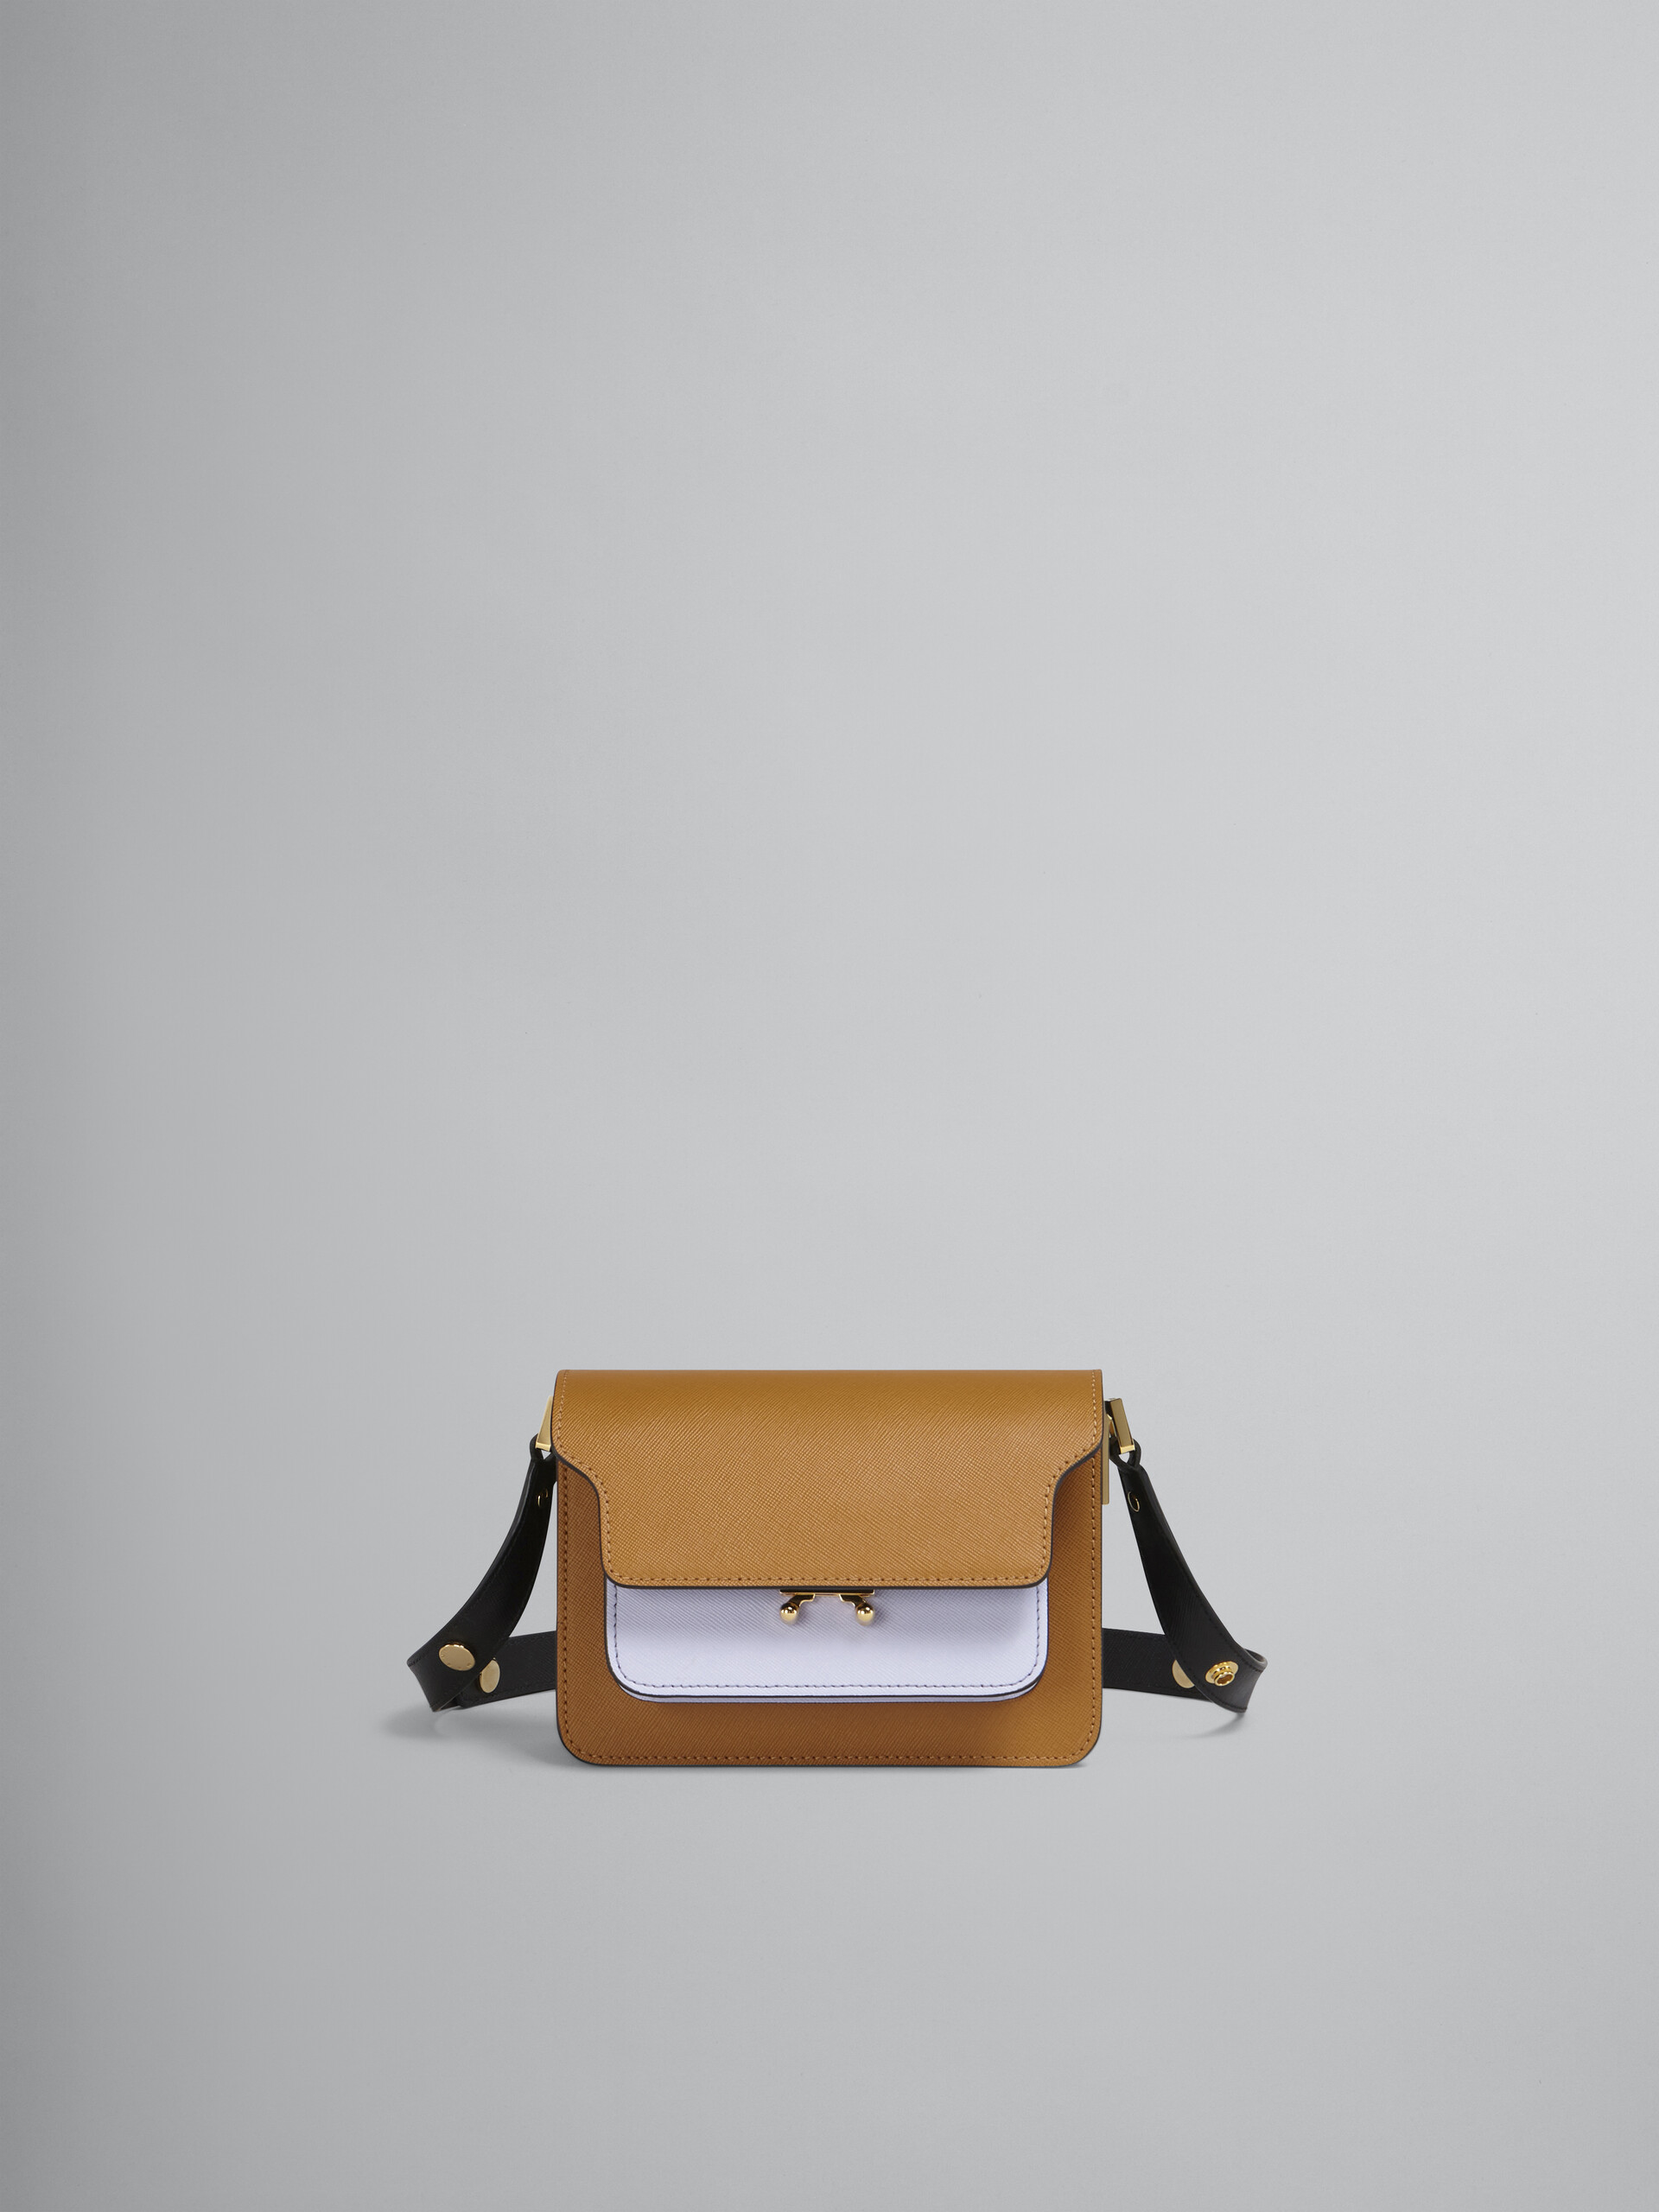 Mini sac TRUNK en cuir saffiano marron, lilas et noir - Sacs portés épaule - Image 1